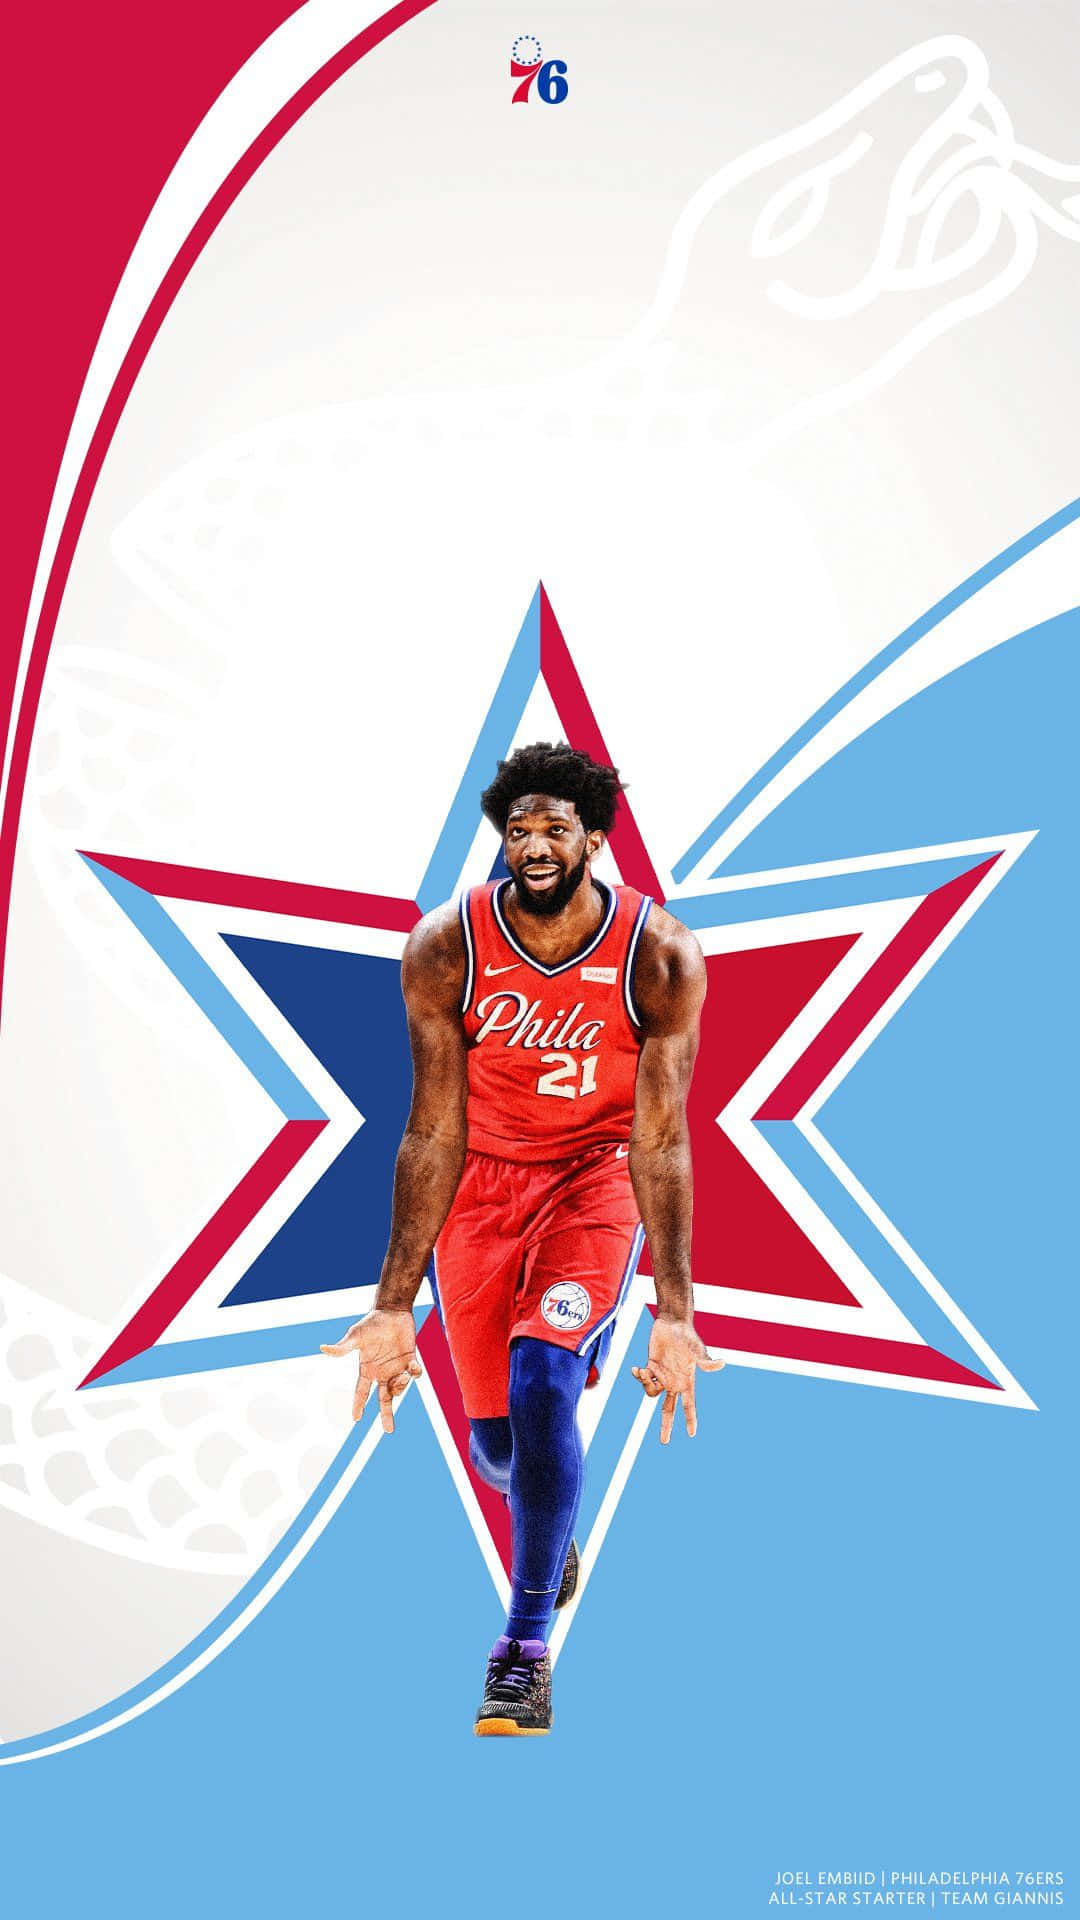 NBA Logo Phone Wallpapers on Behance | Nba logo, Nba, Nba wallpapers